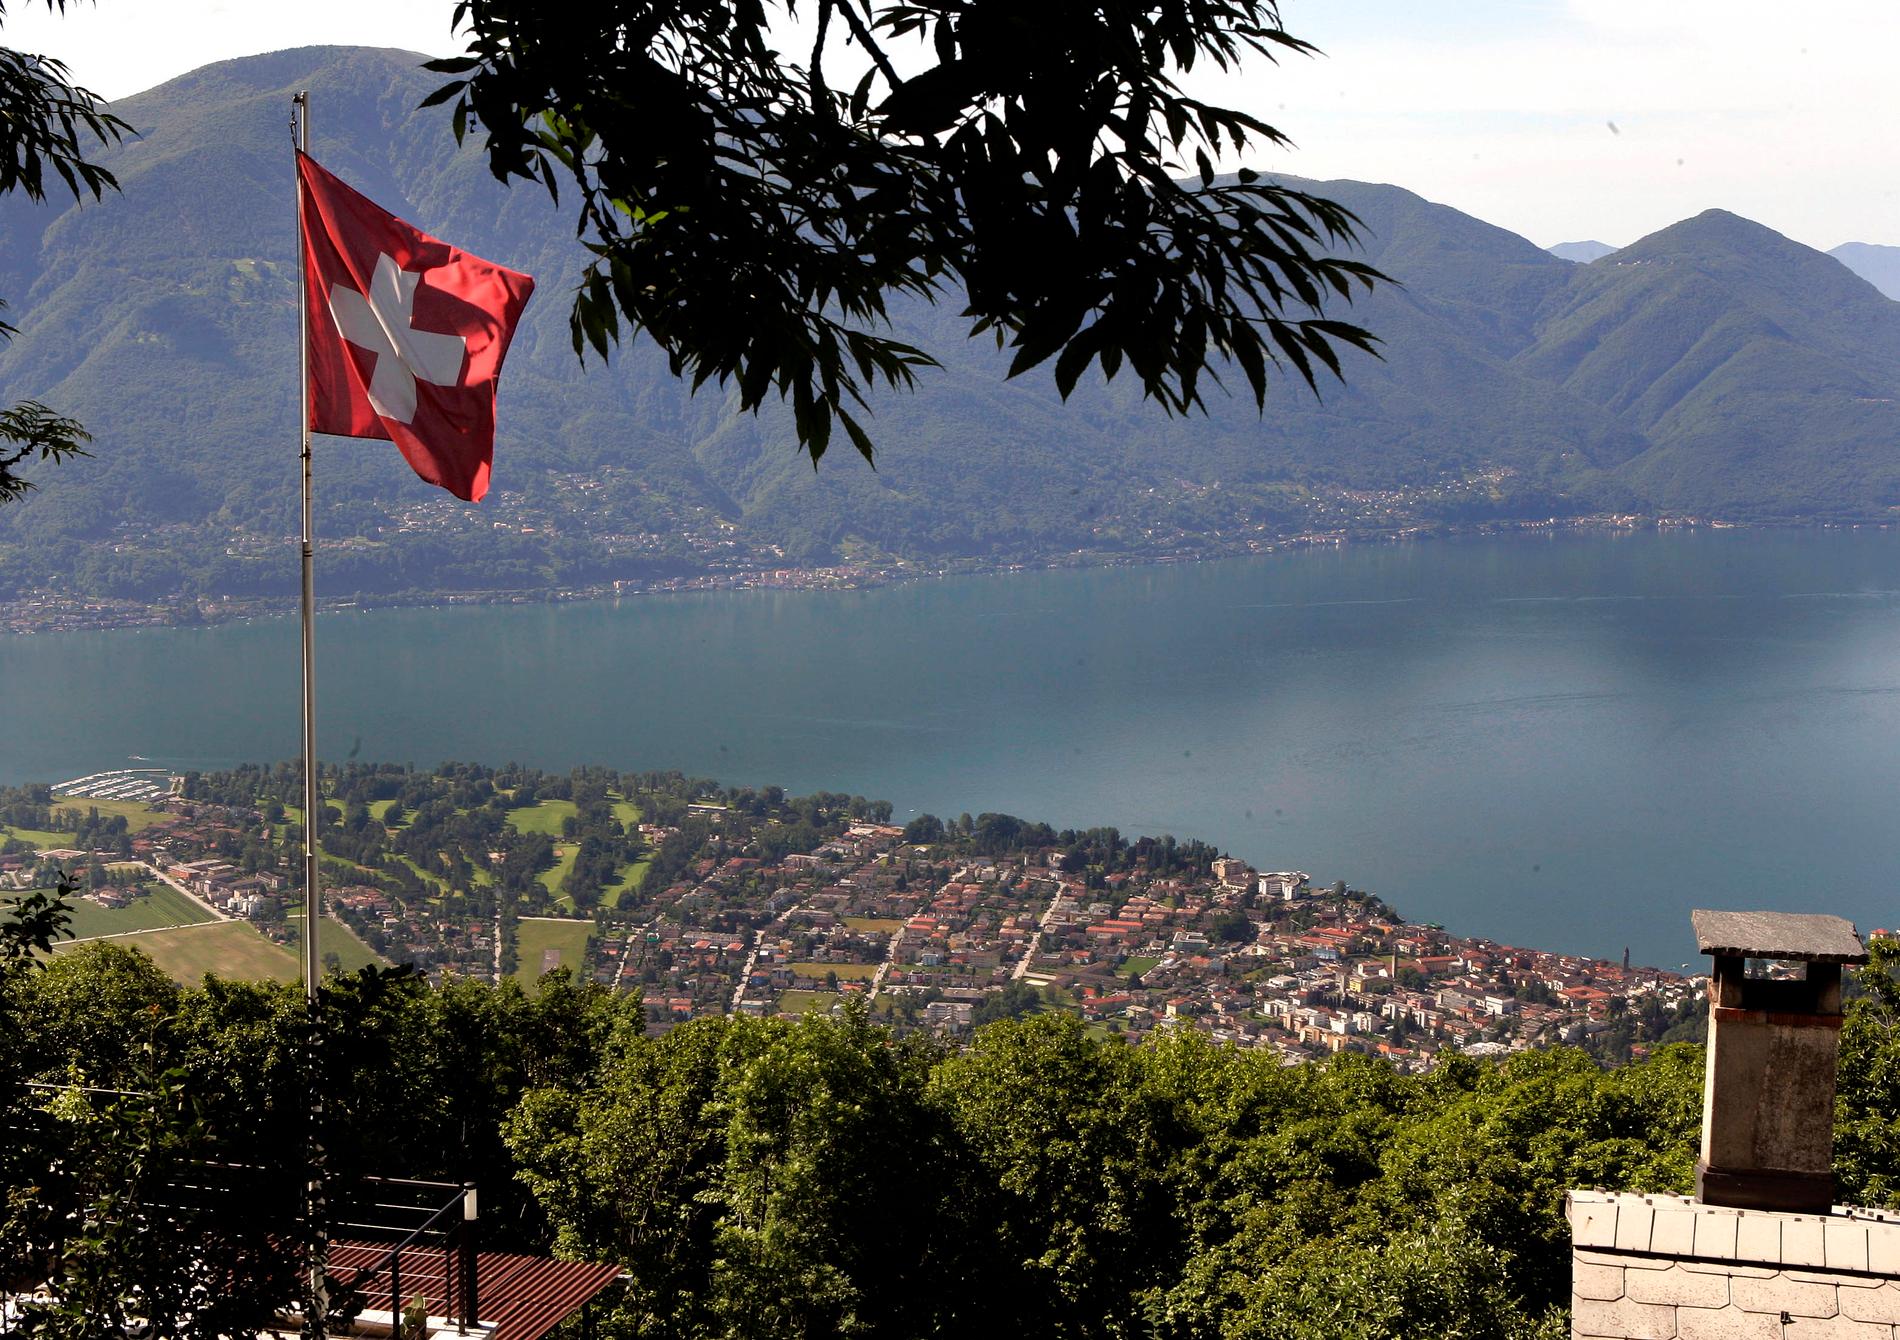 Schweiz vill testa sitt nya elektroniska röstningssystem och bjuder in hackare att försöka manipulera ett fejkval. Arkivbild.